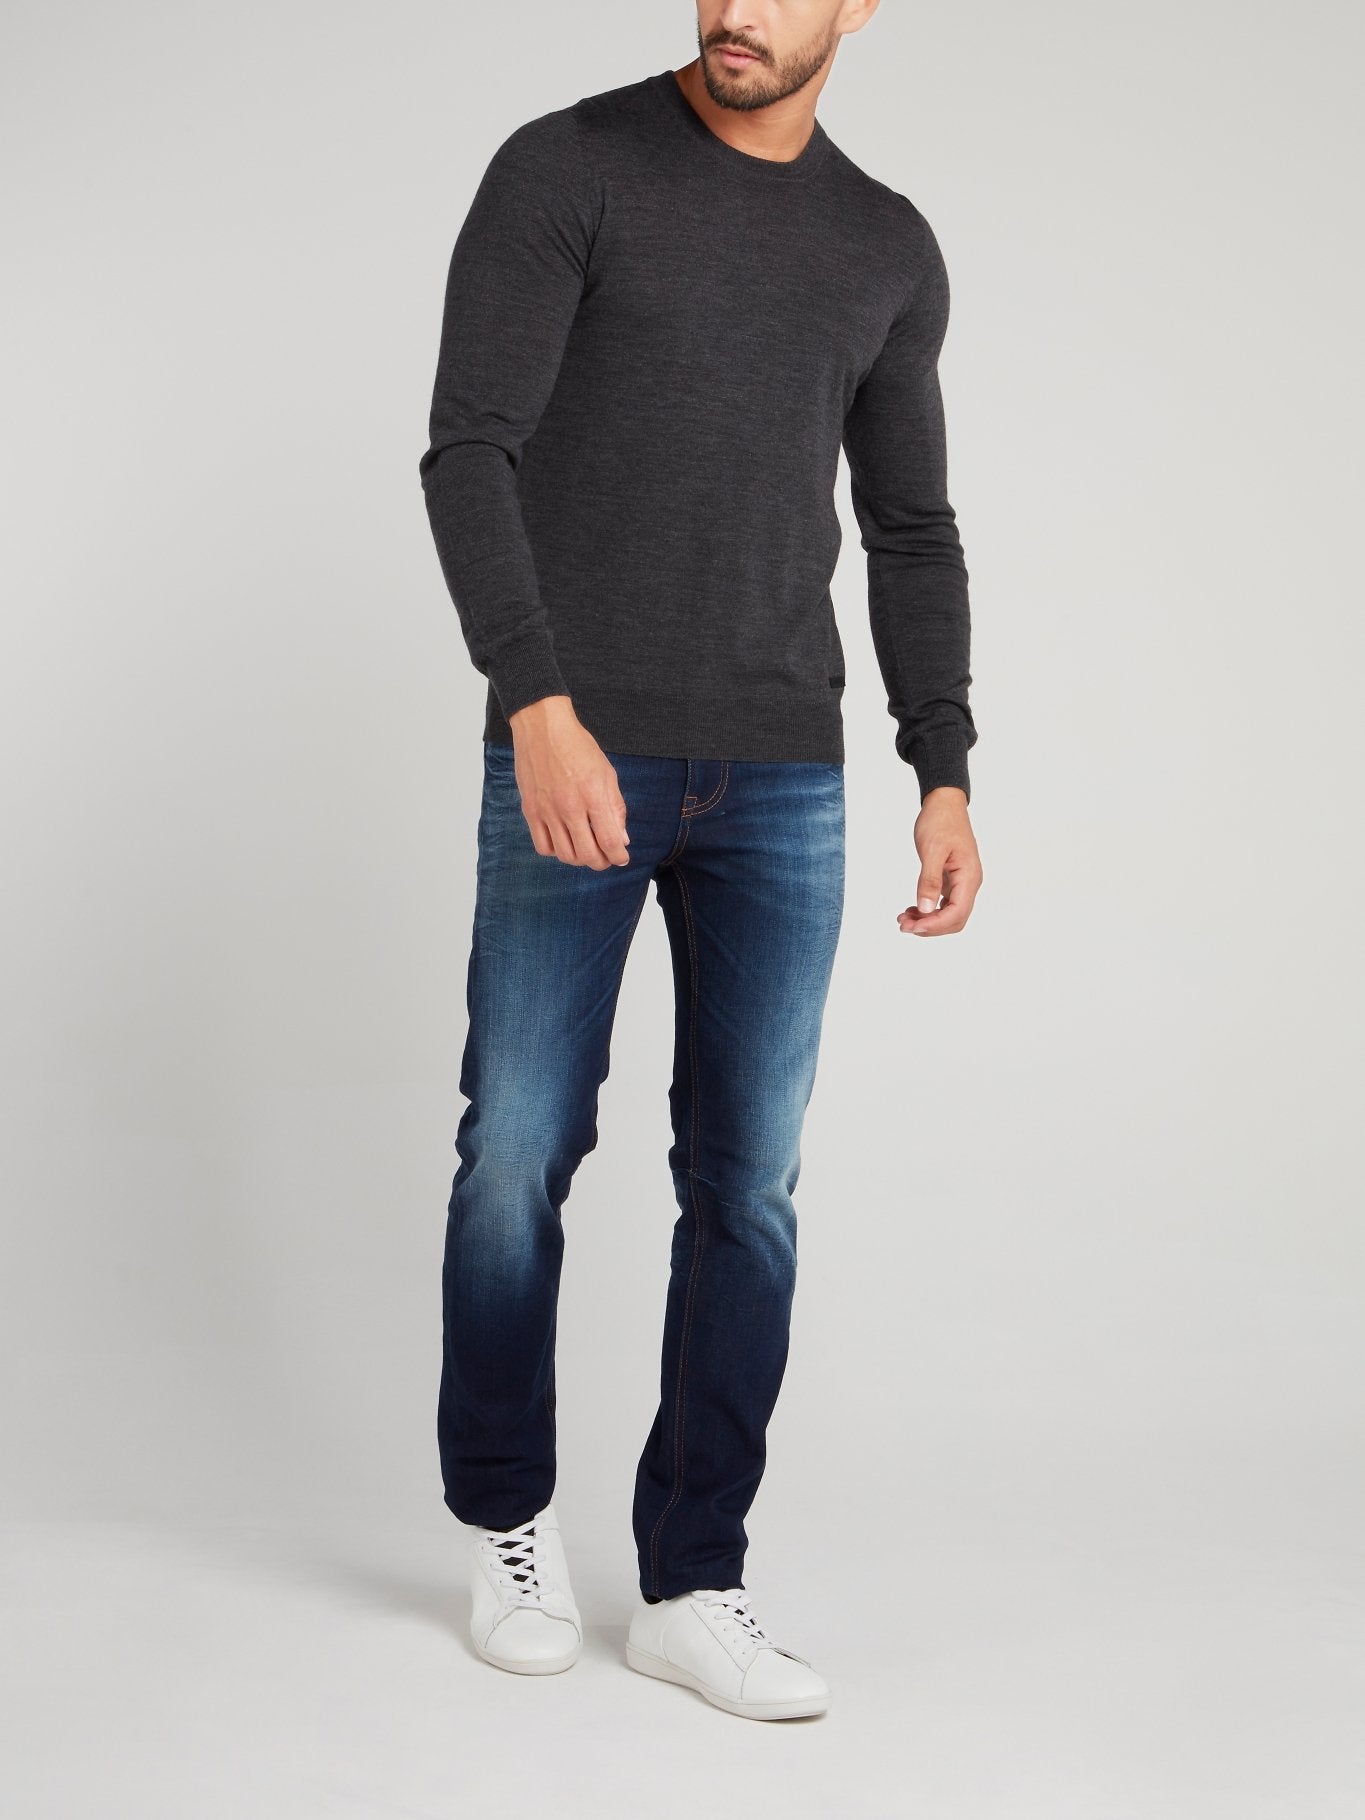 Grey Rear Stripe Sweater